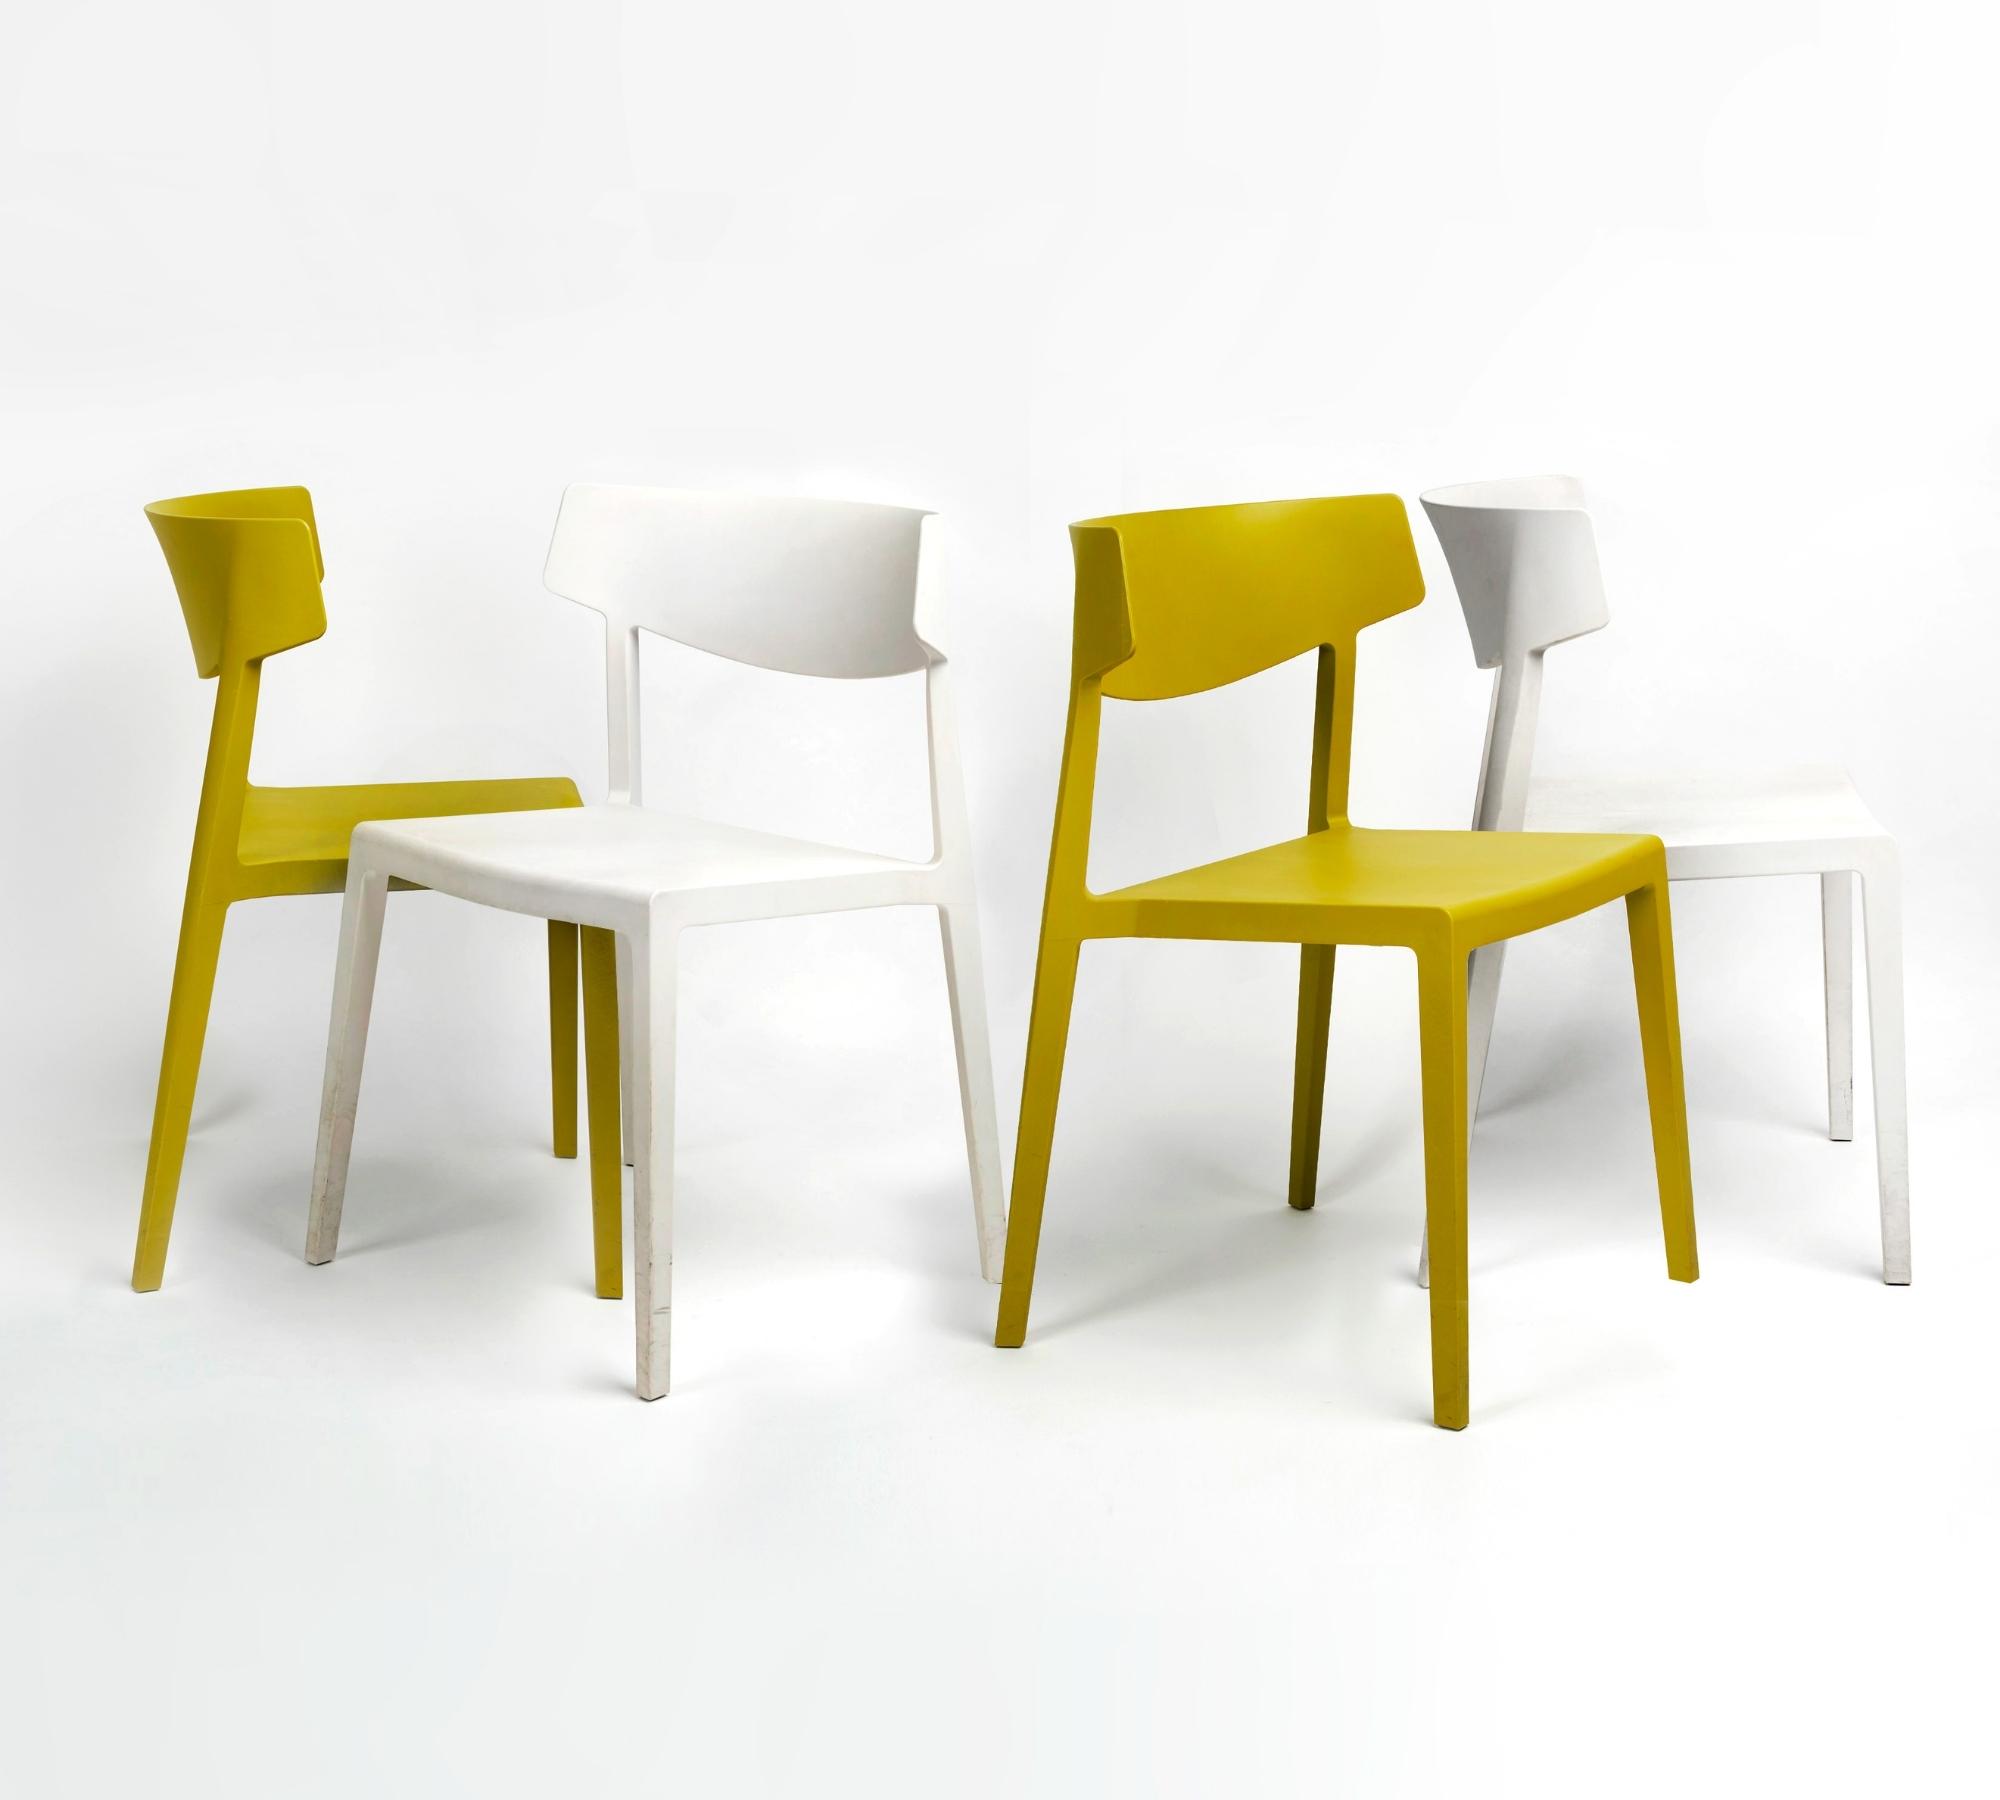 Indoor-Outdoor Stapelbarer Kunststoff-Stuhl in Weiß